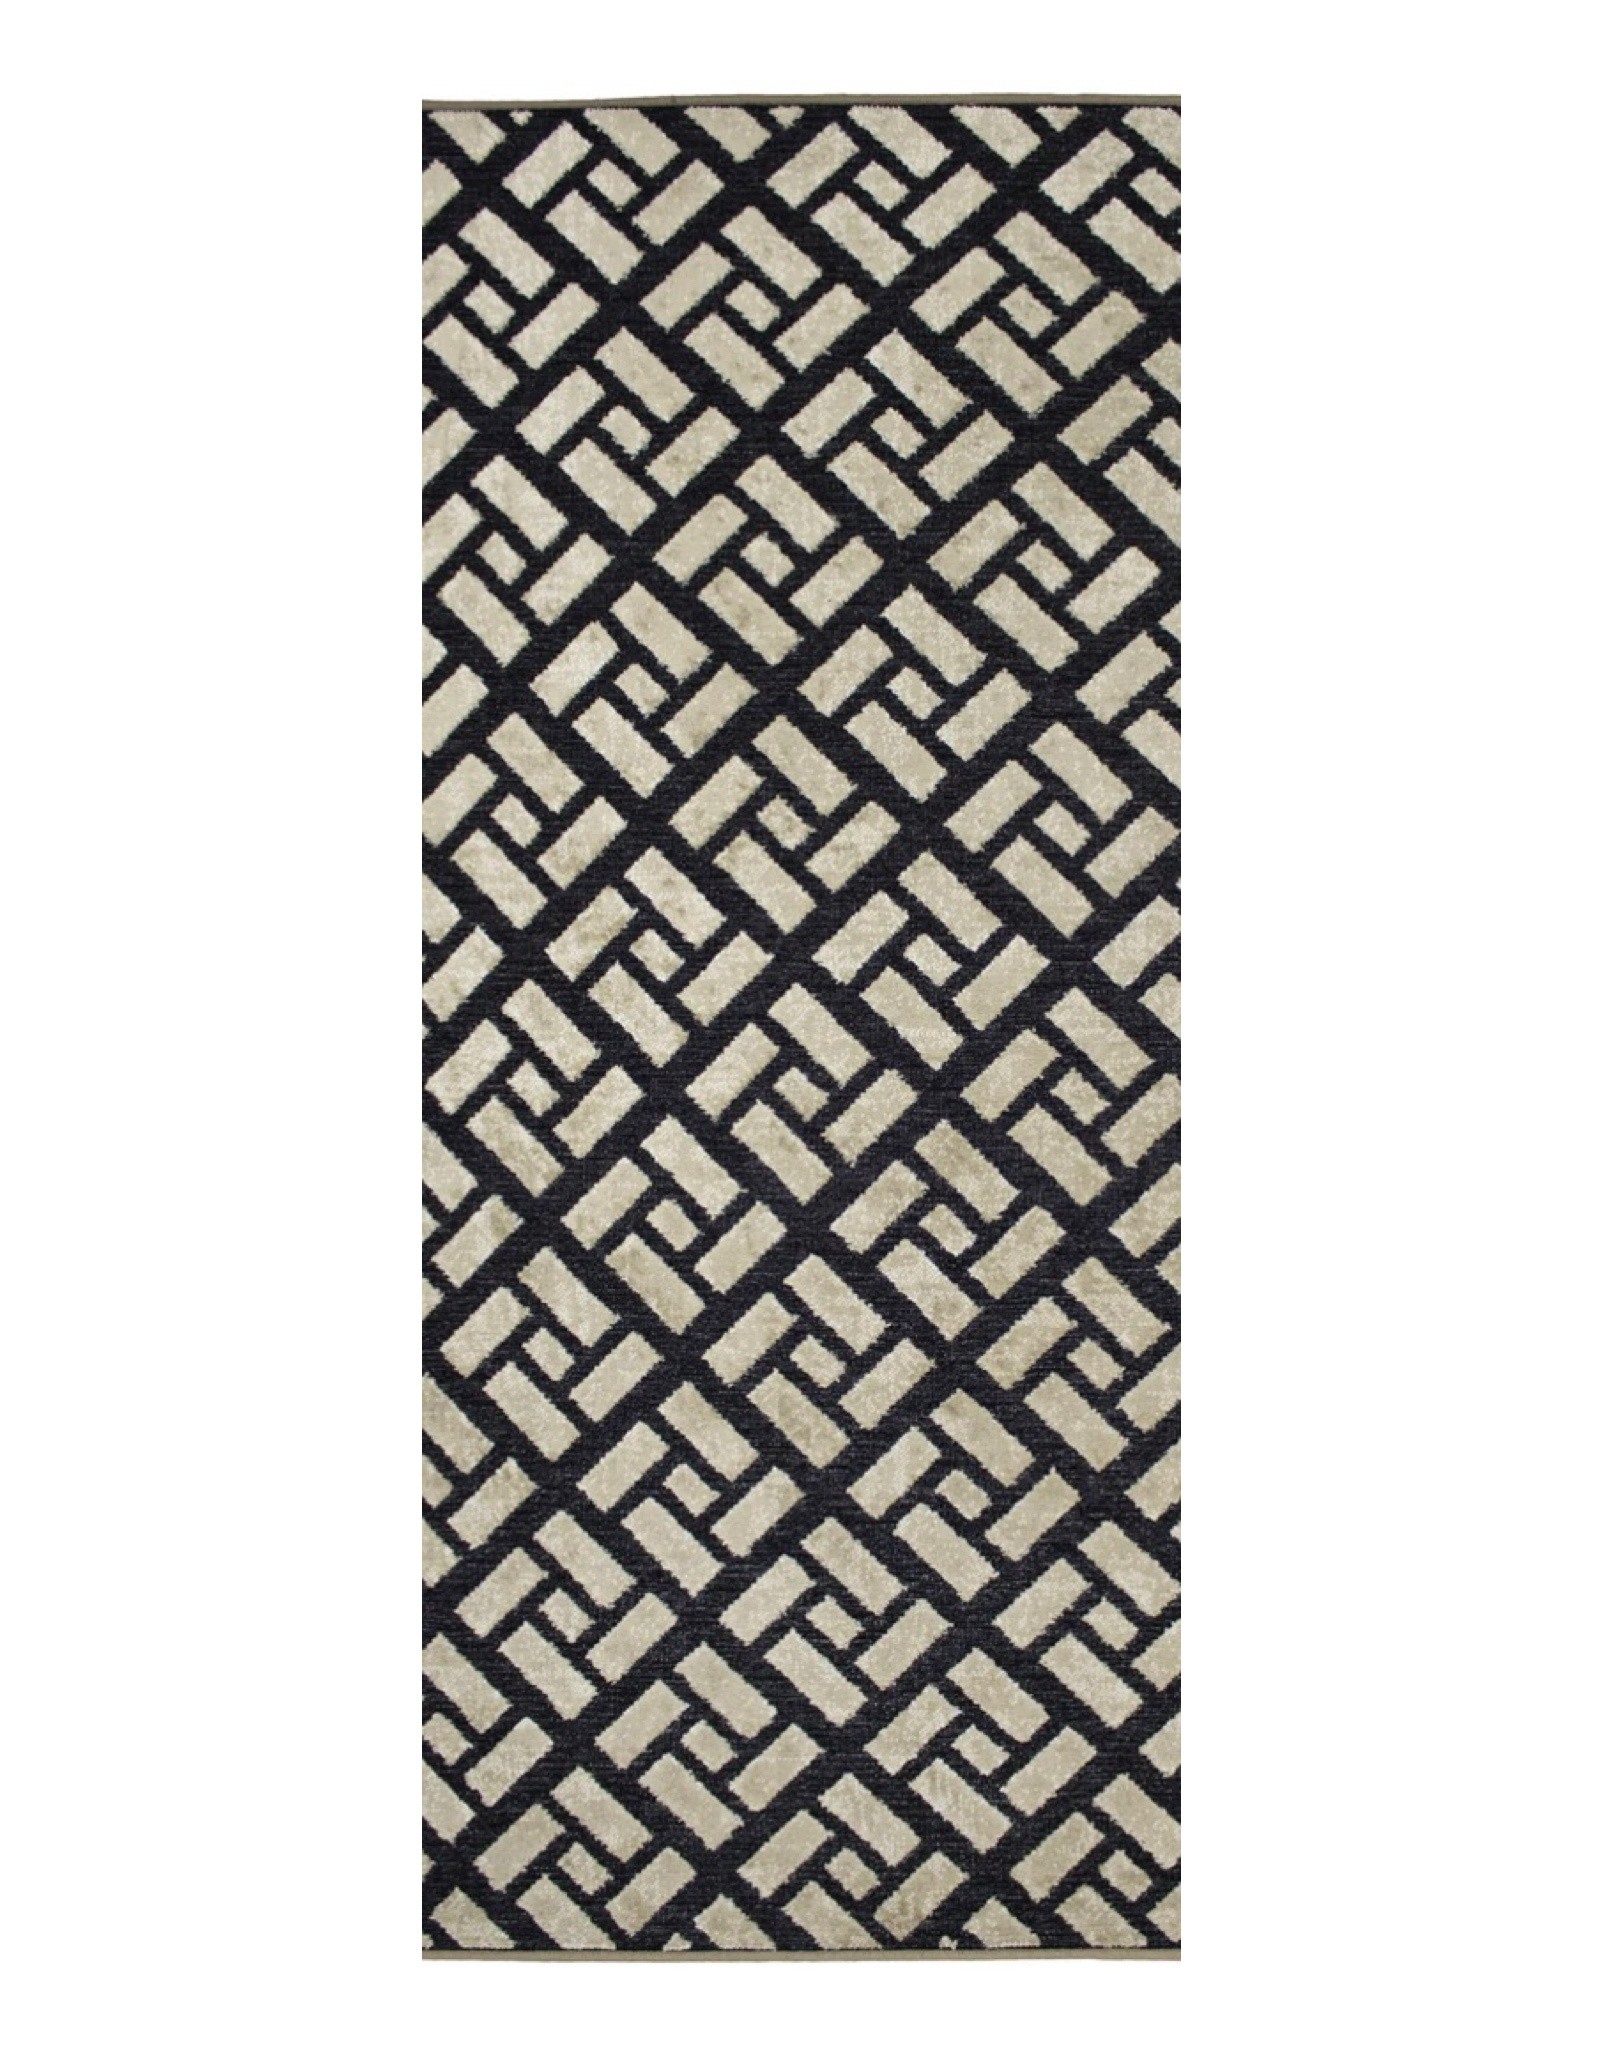 Rugs Avocado Artificial Silk 2'4 x 7'3 Tiles Black